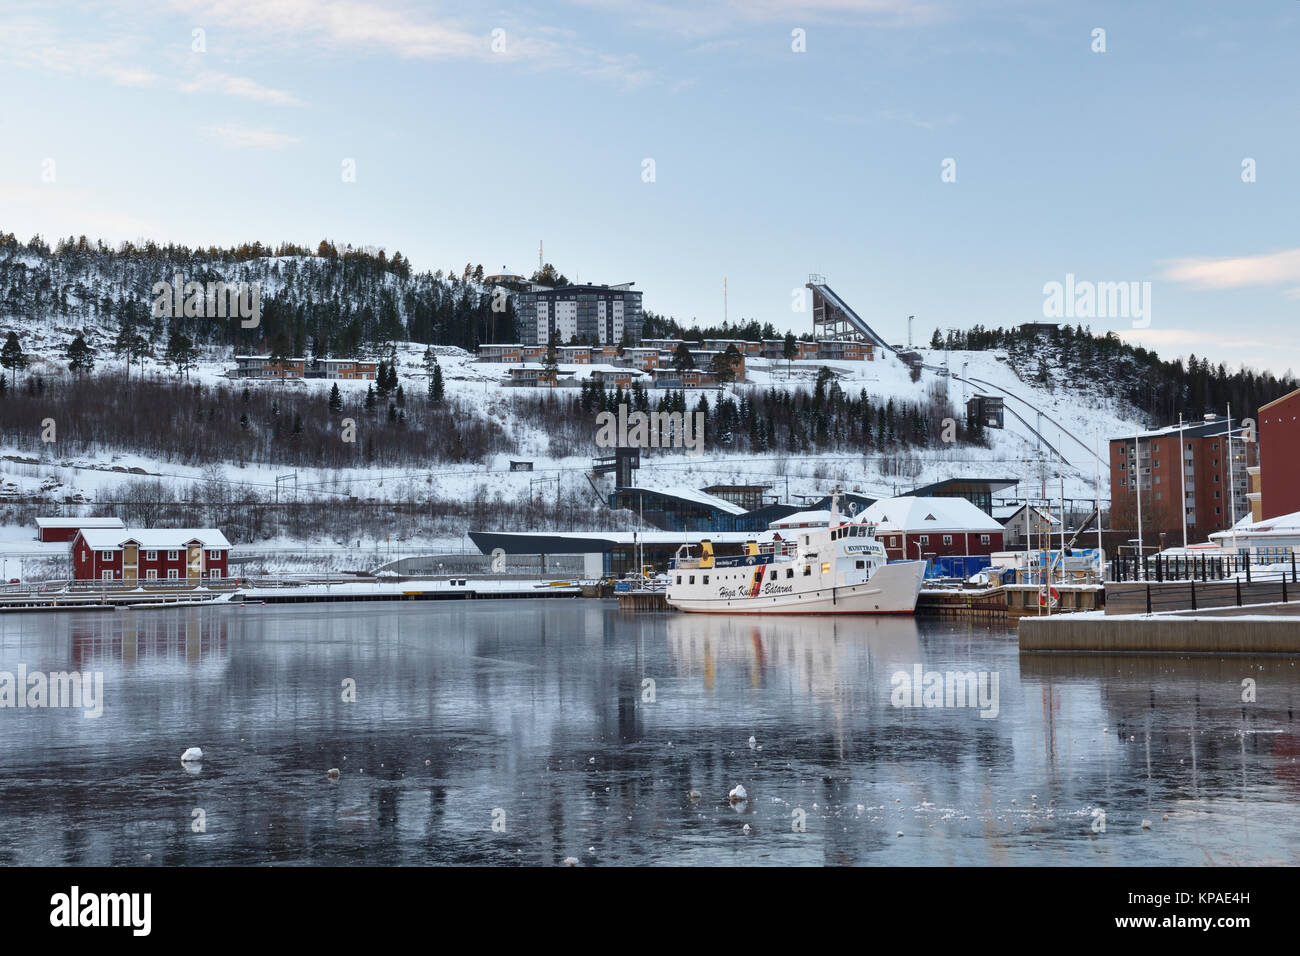 Ornskoldsvik,Sweden - Décembre 05,2017:Port dans la ville Ornskoldsvik dans le patrimoine de la haute-côte au nord de la Suède d'une journée froide avec de la glace sur la Banque D'Images